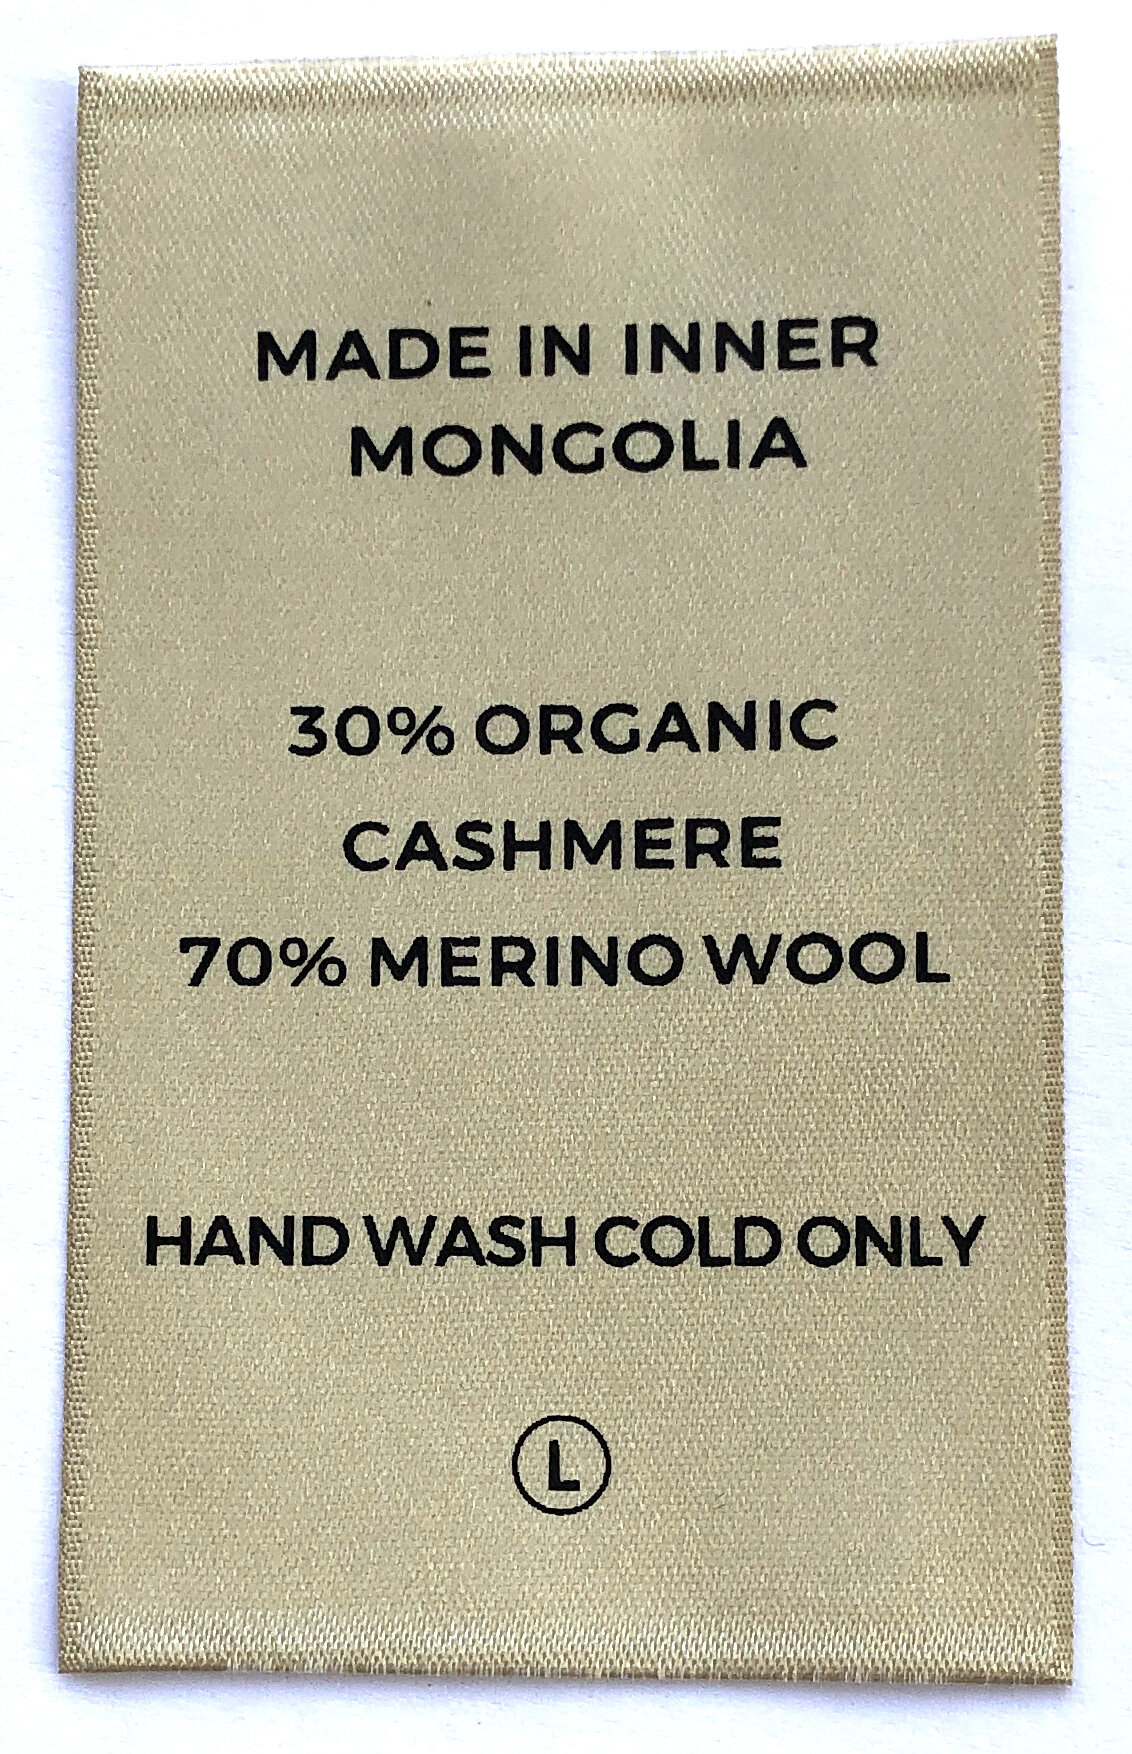 cahsmere coats labels (1).JPG